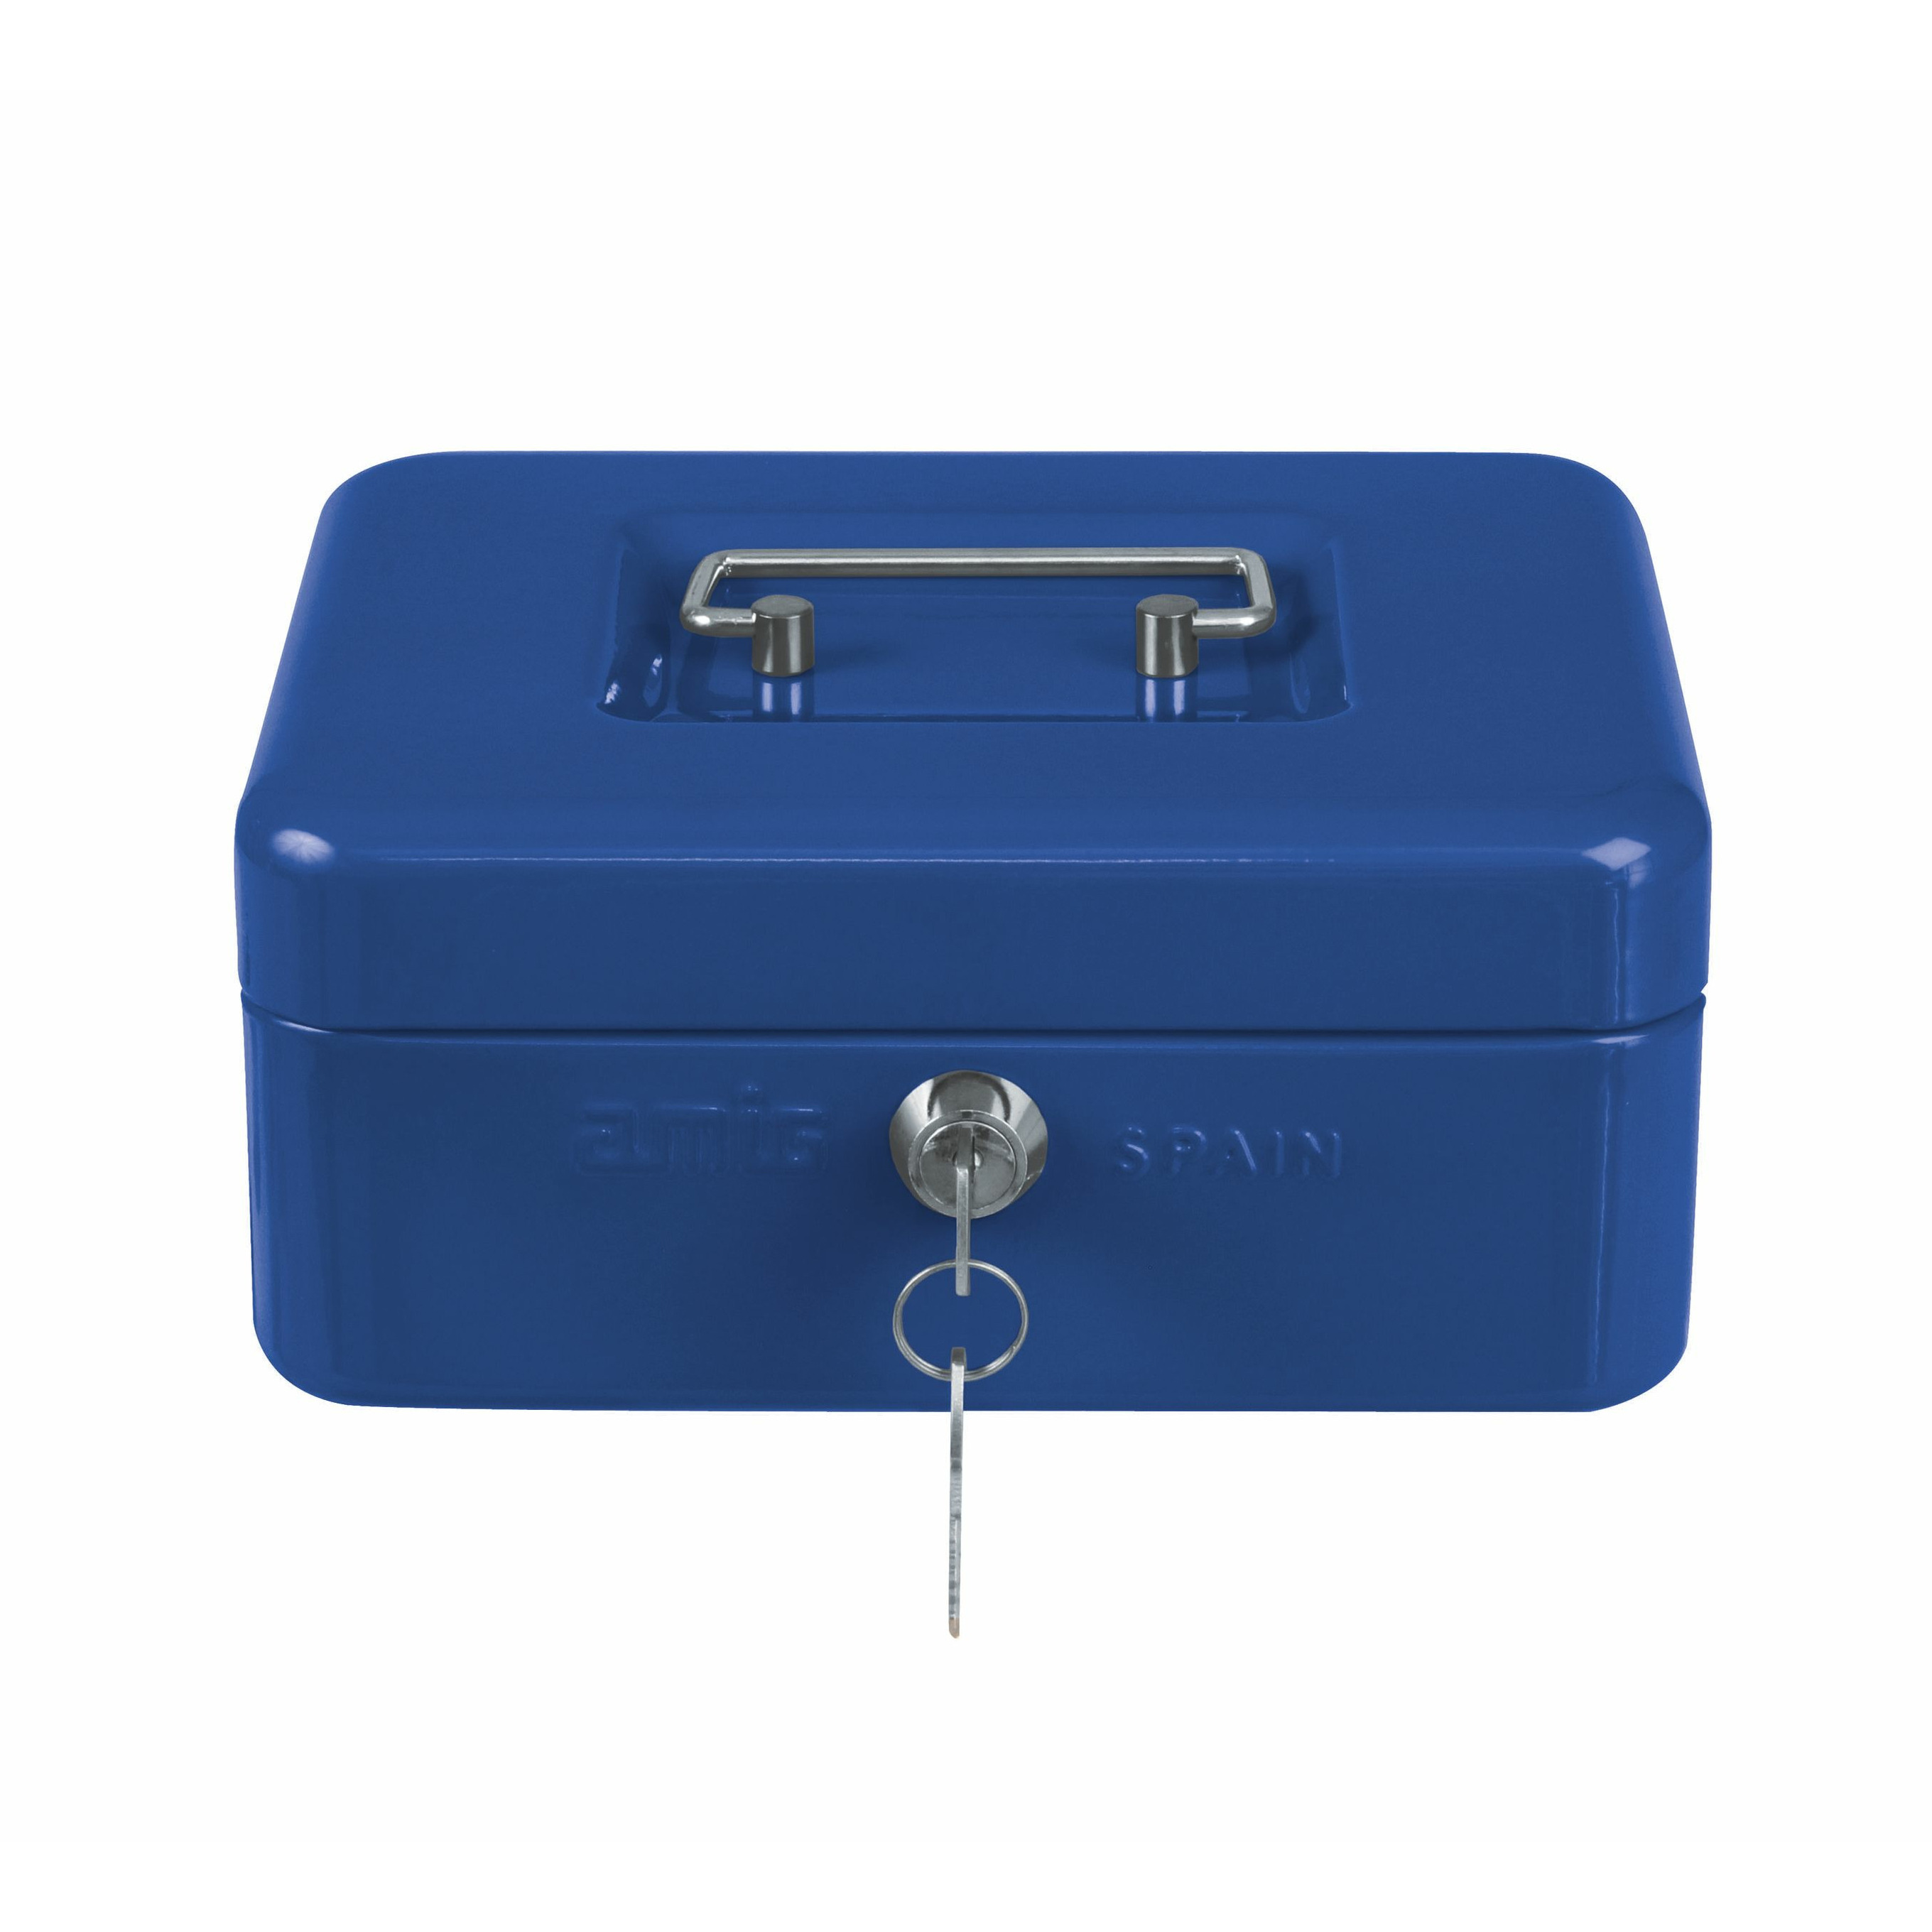 AMIG Geldkistje met 2 sleutels blauw staal 20 x 16 x 7 cm inbraakbeveiliging